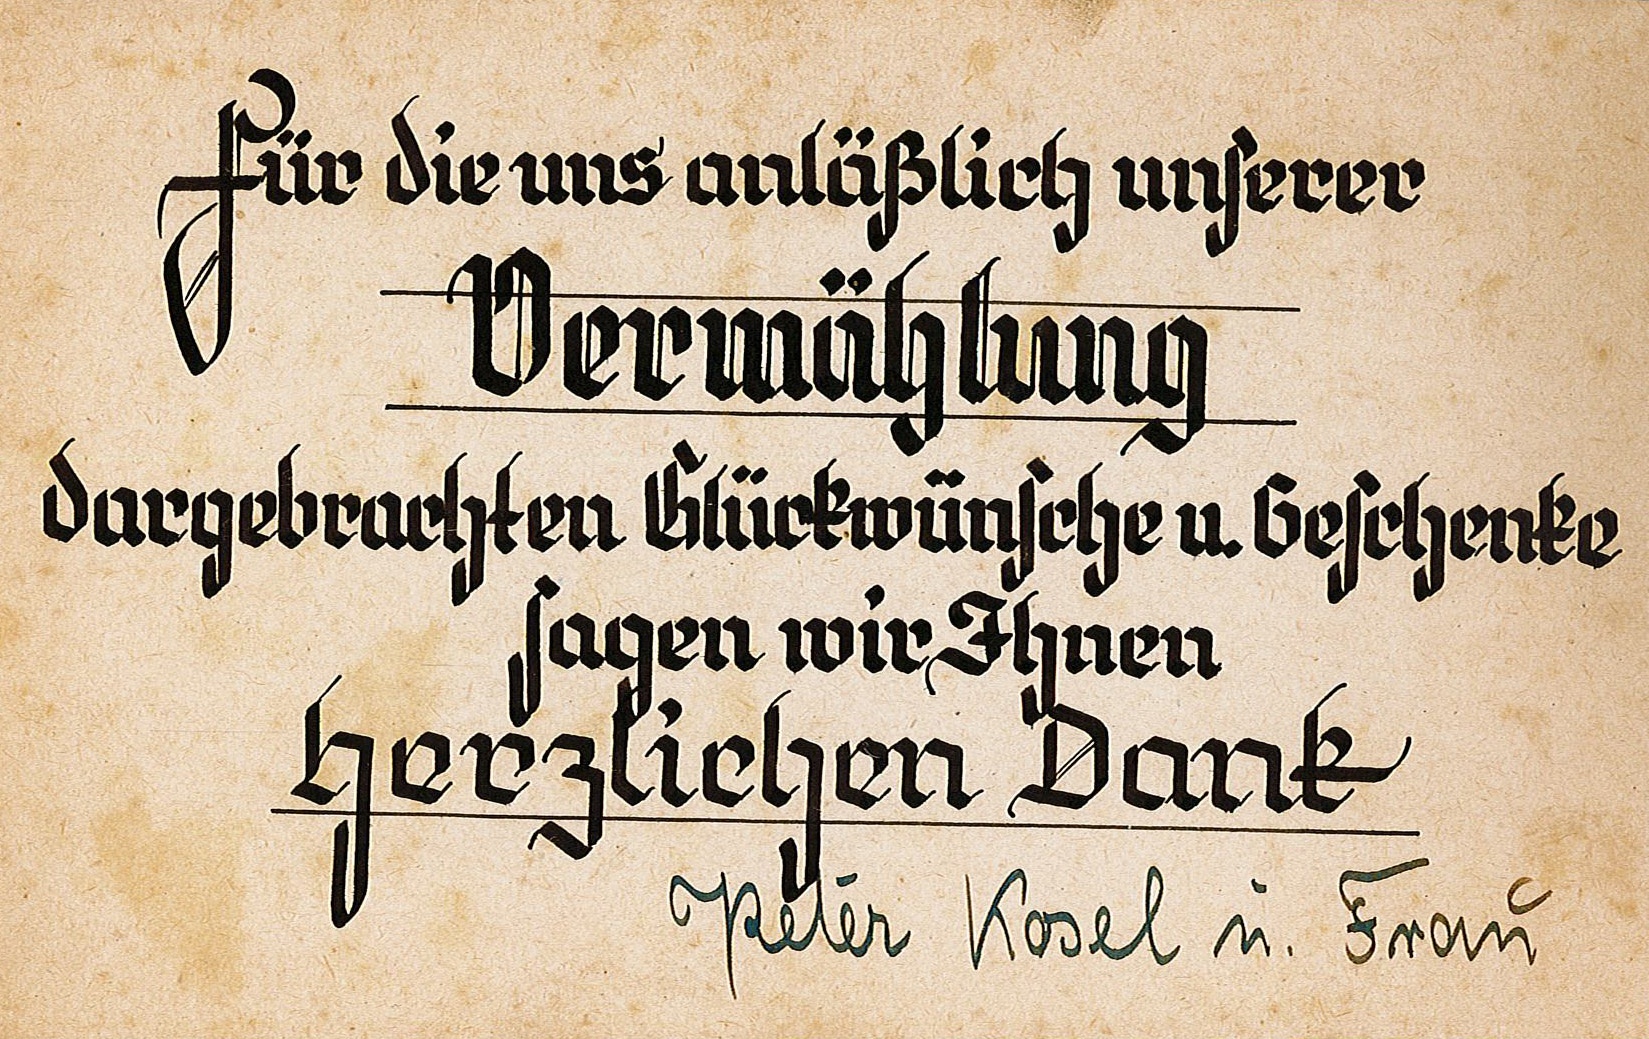 Dankeskarte zur Hochzeit von Familie Kosel an Hildegard Stohshoff, 16.11.1944 - nebst Umschlag (Museum Wolmirstedt RR-F)